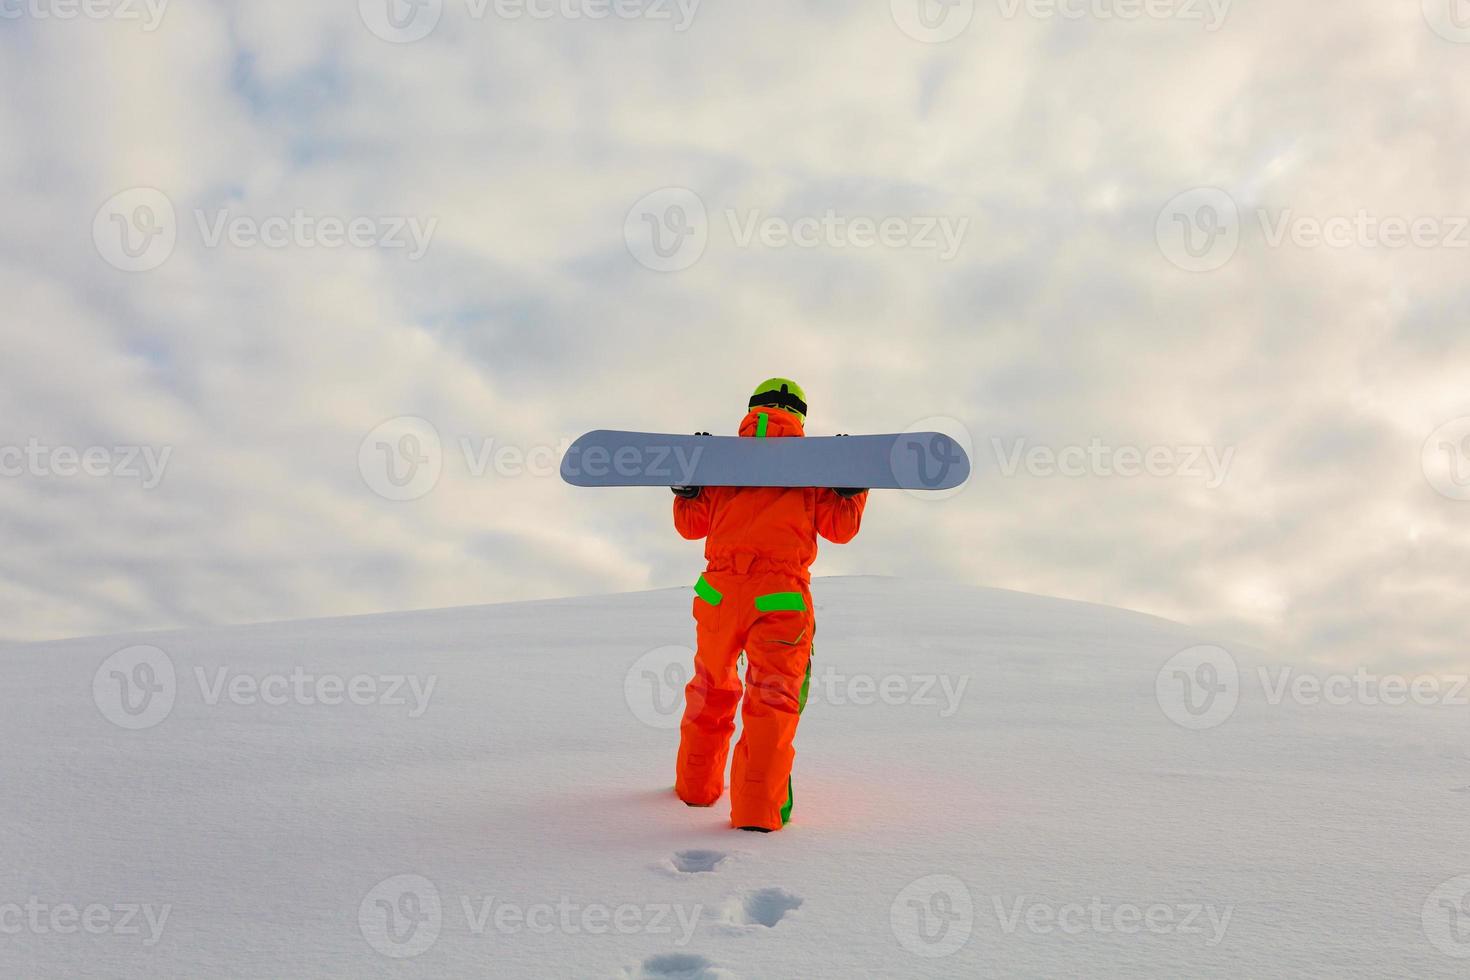 snowboarder escalando no topo de uma pista de esqui foto